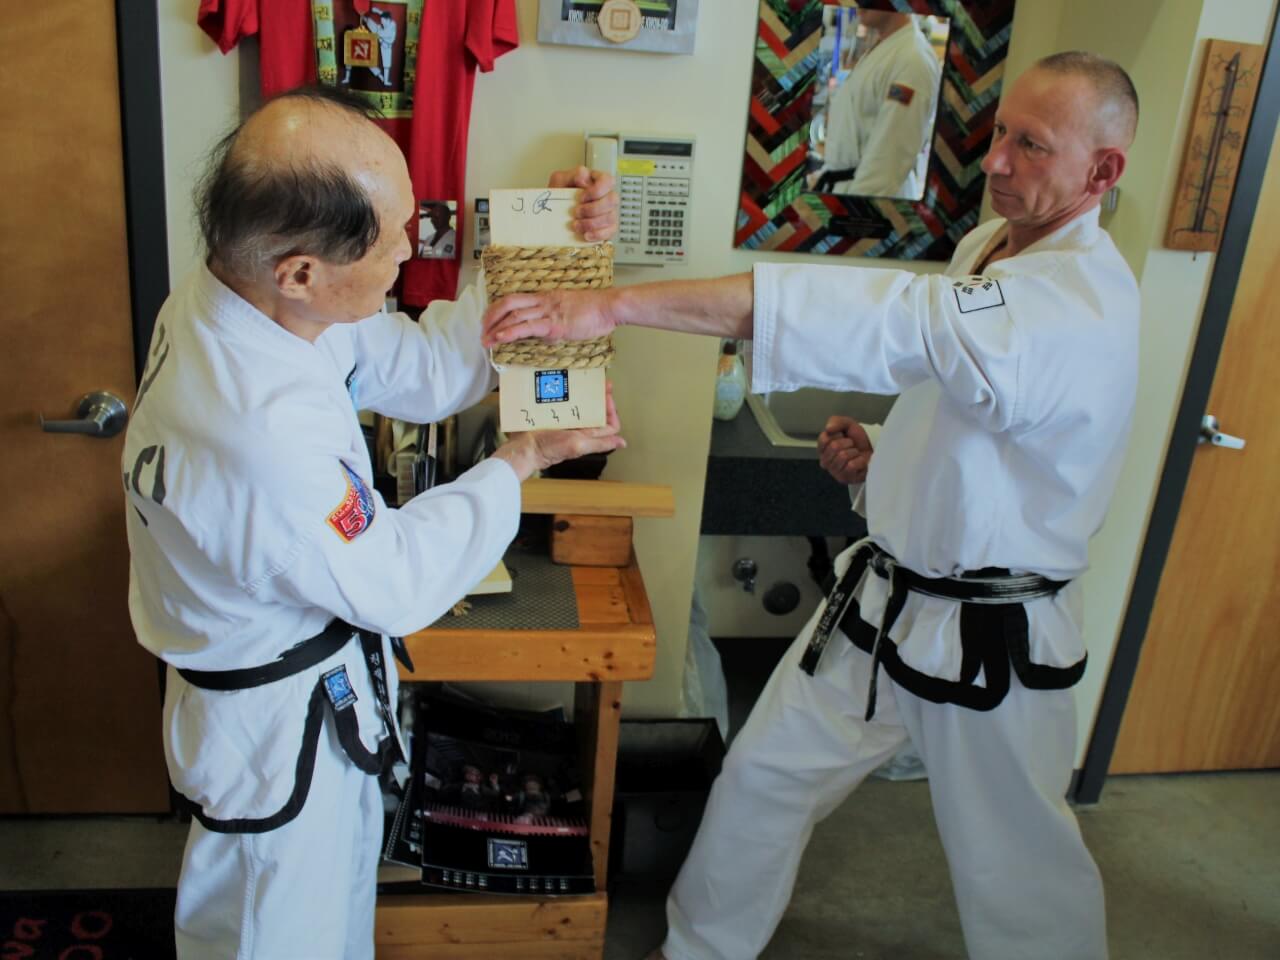 Joachim bekommt ein von Großmeister Kwon handgefertigtes Target aus Reisstro. Hier zeigt er einen Handkantenschlag.